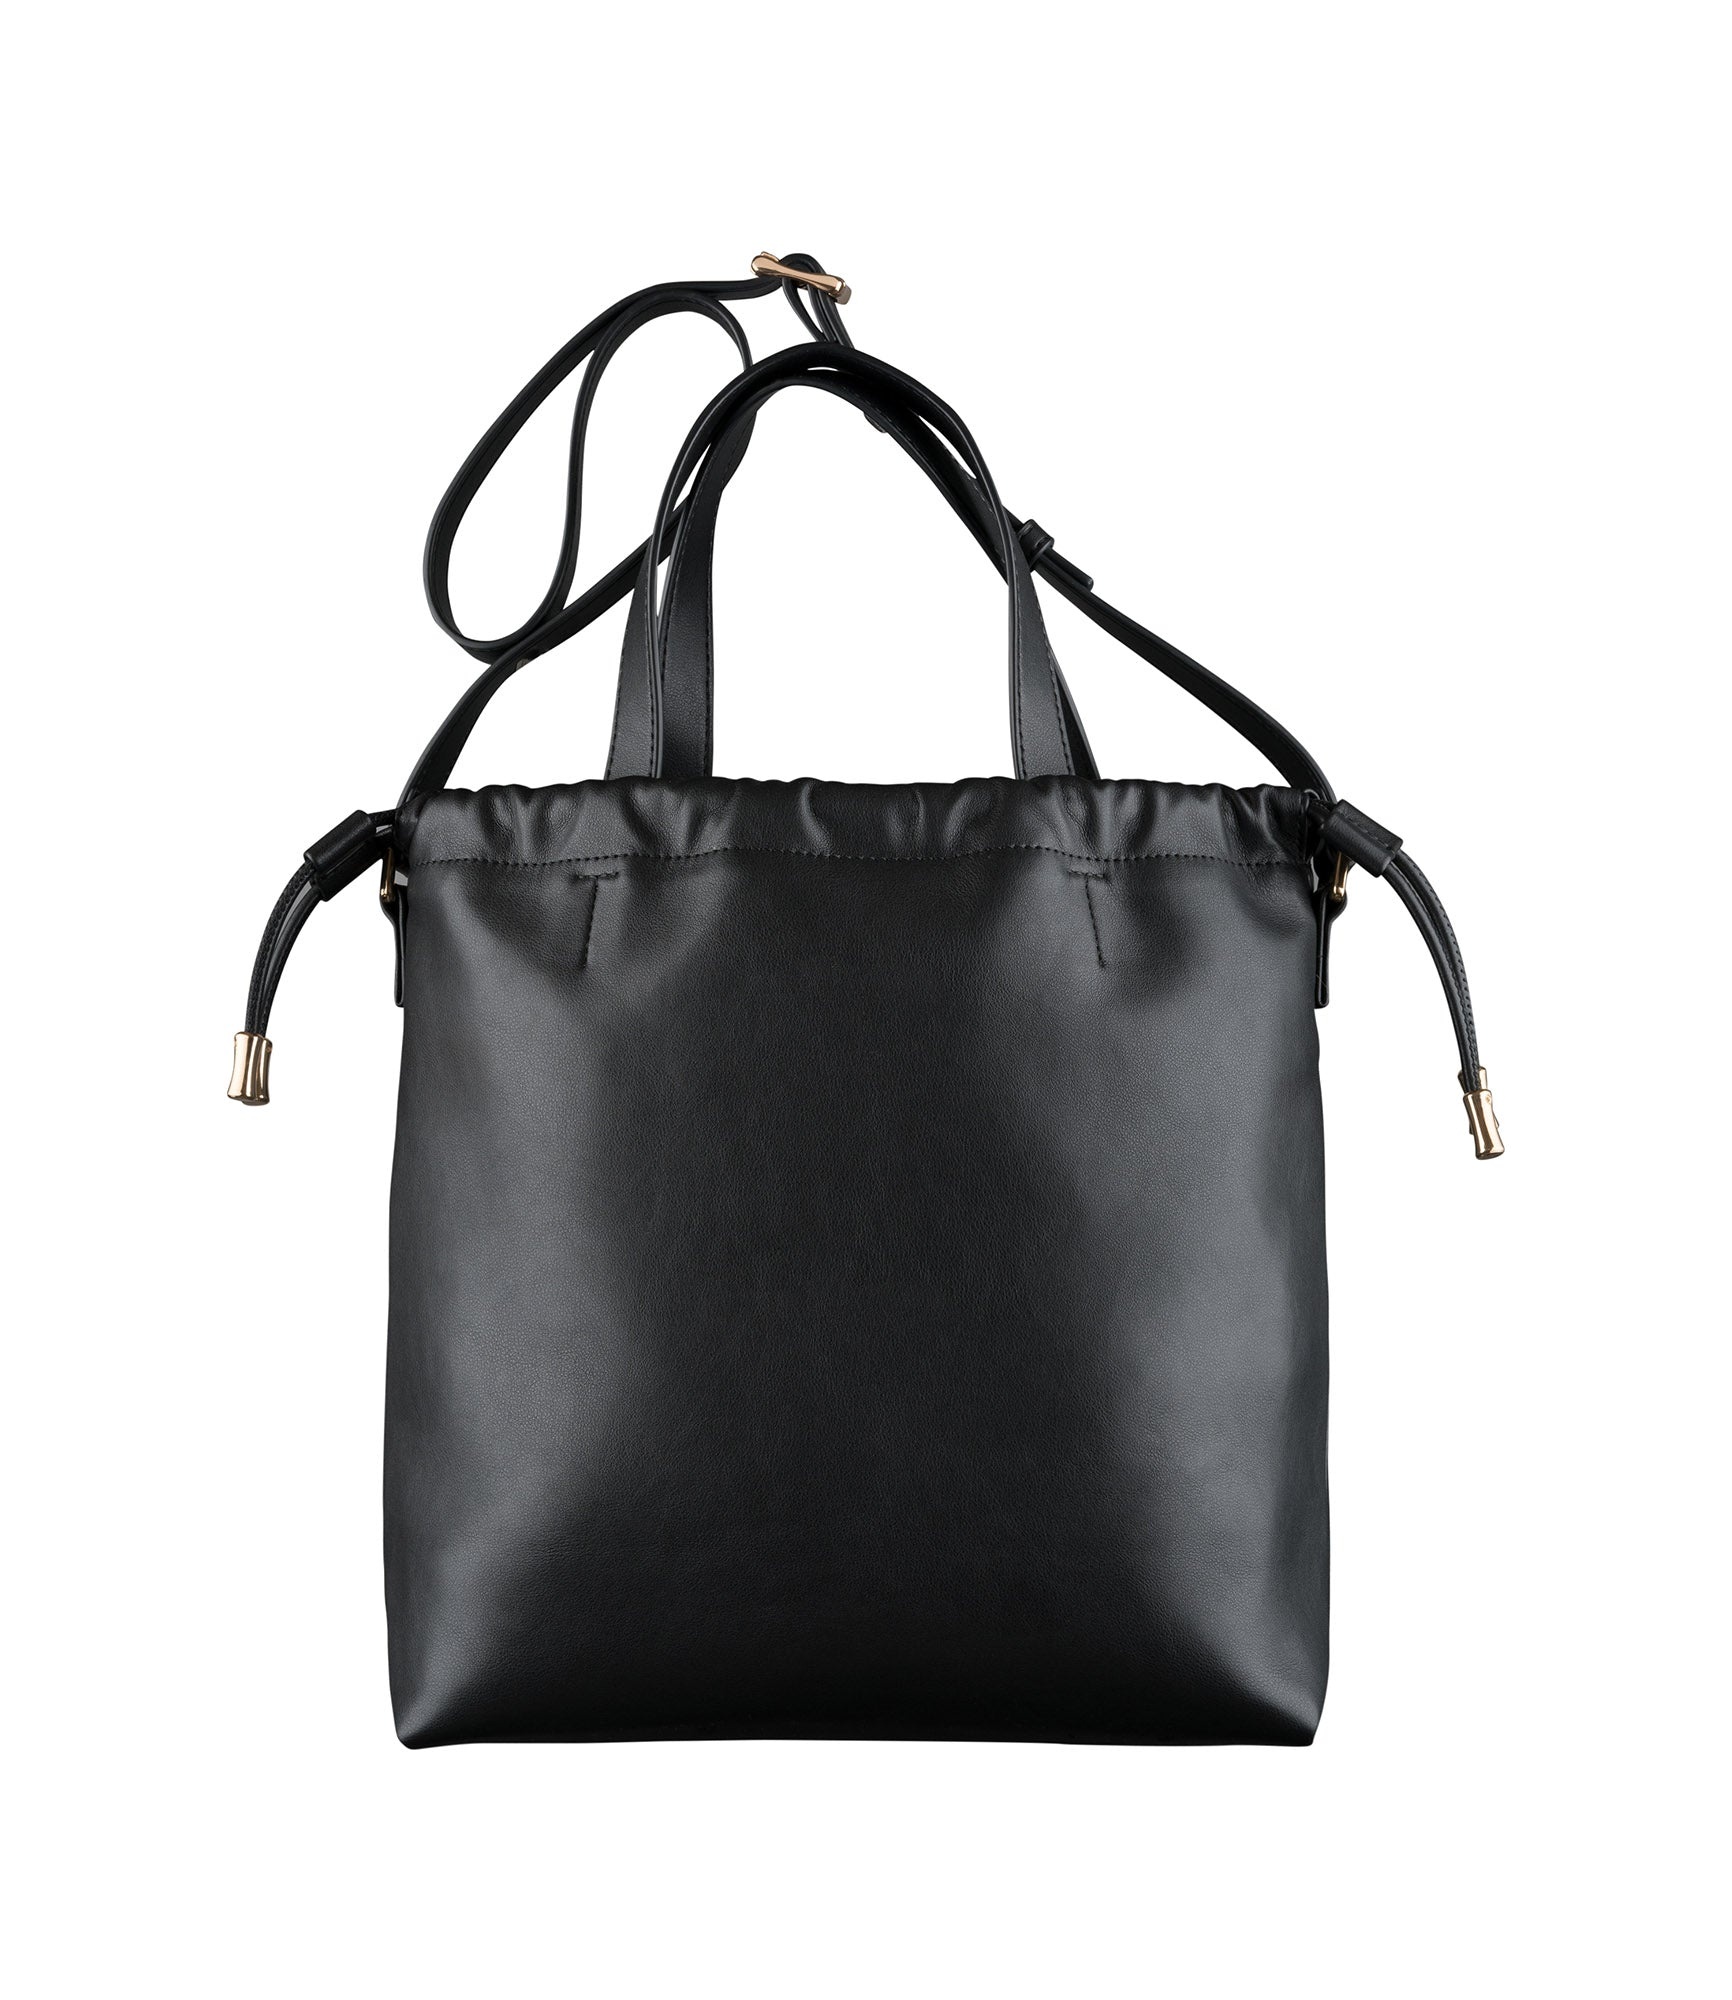 Ninon shopping bag - 4